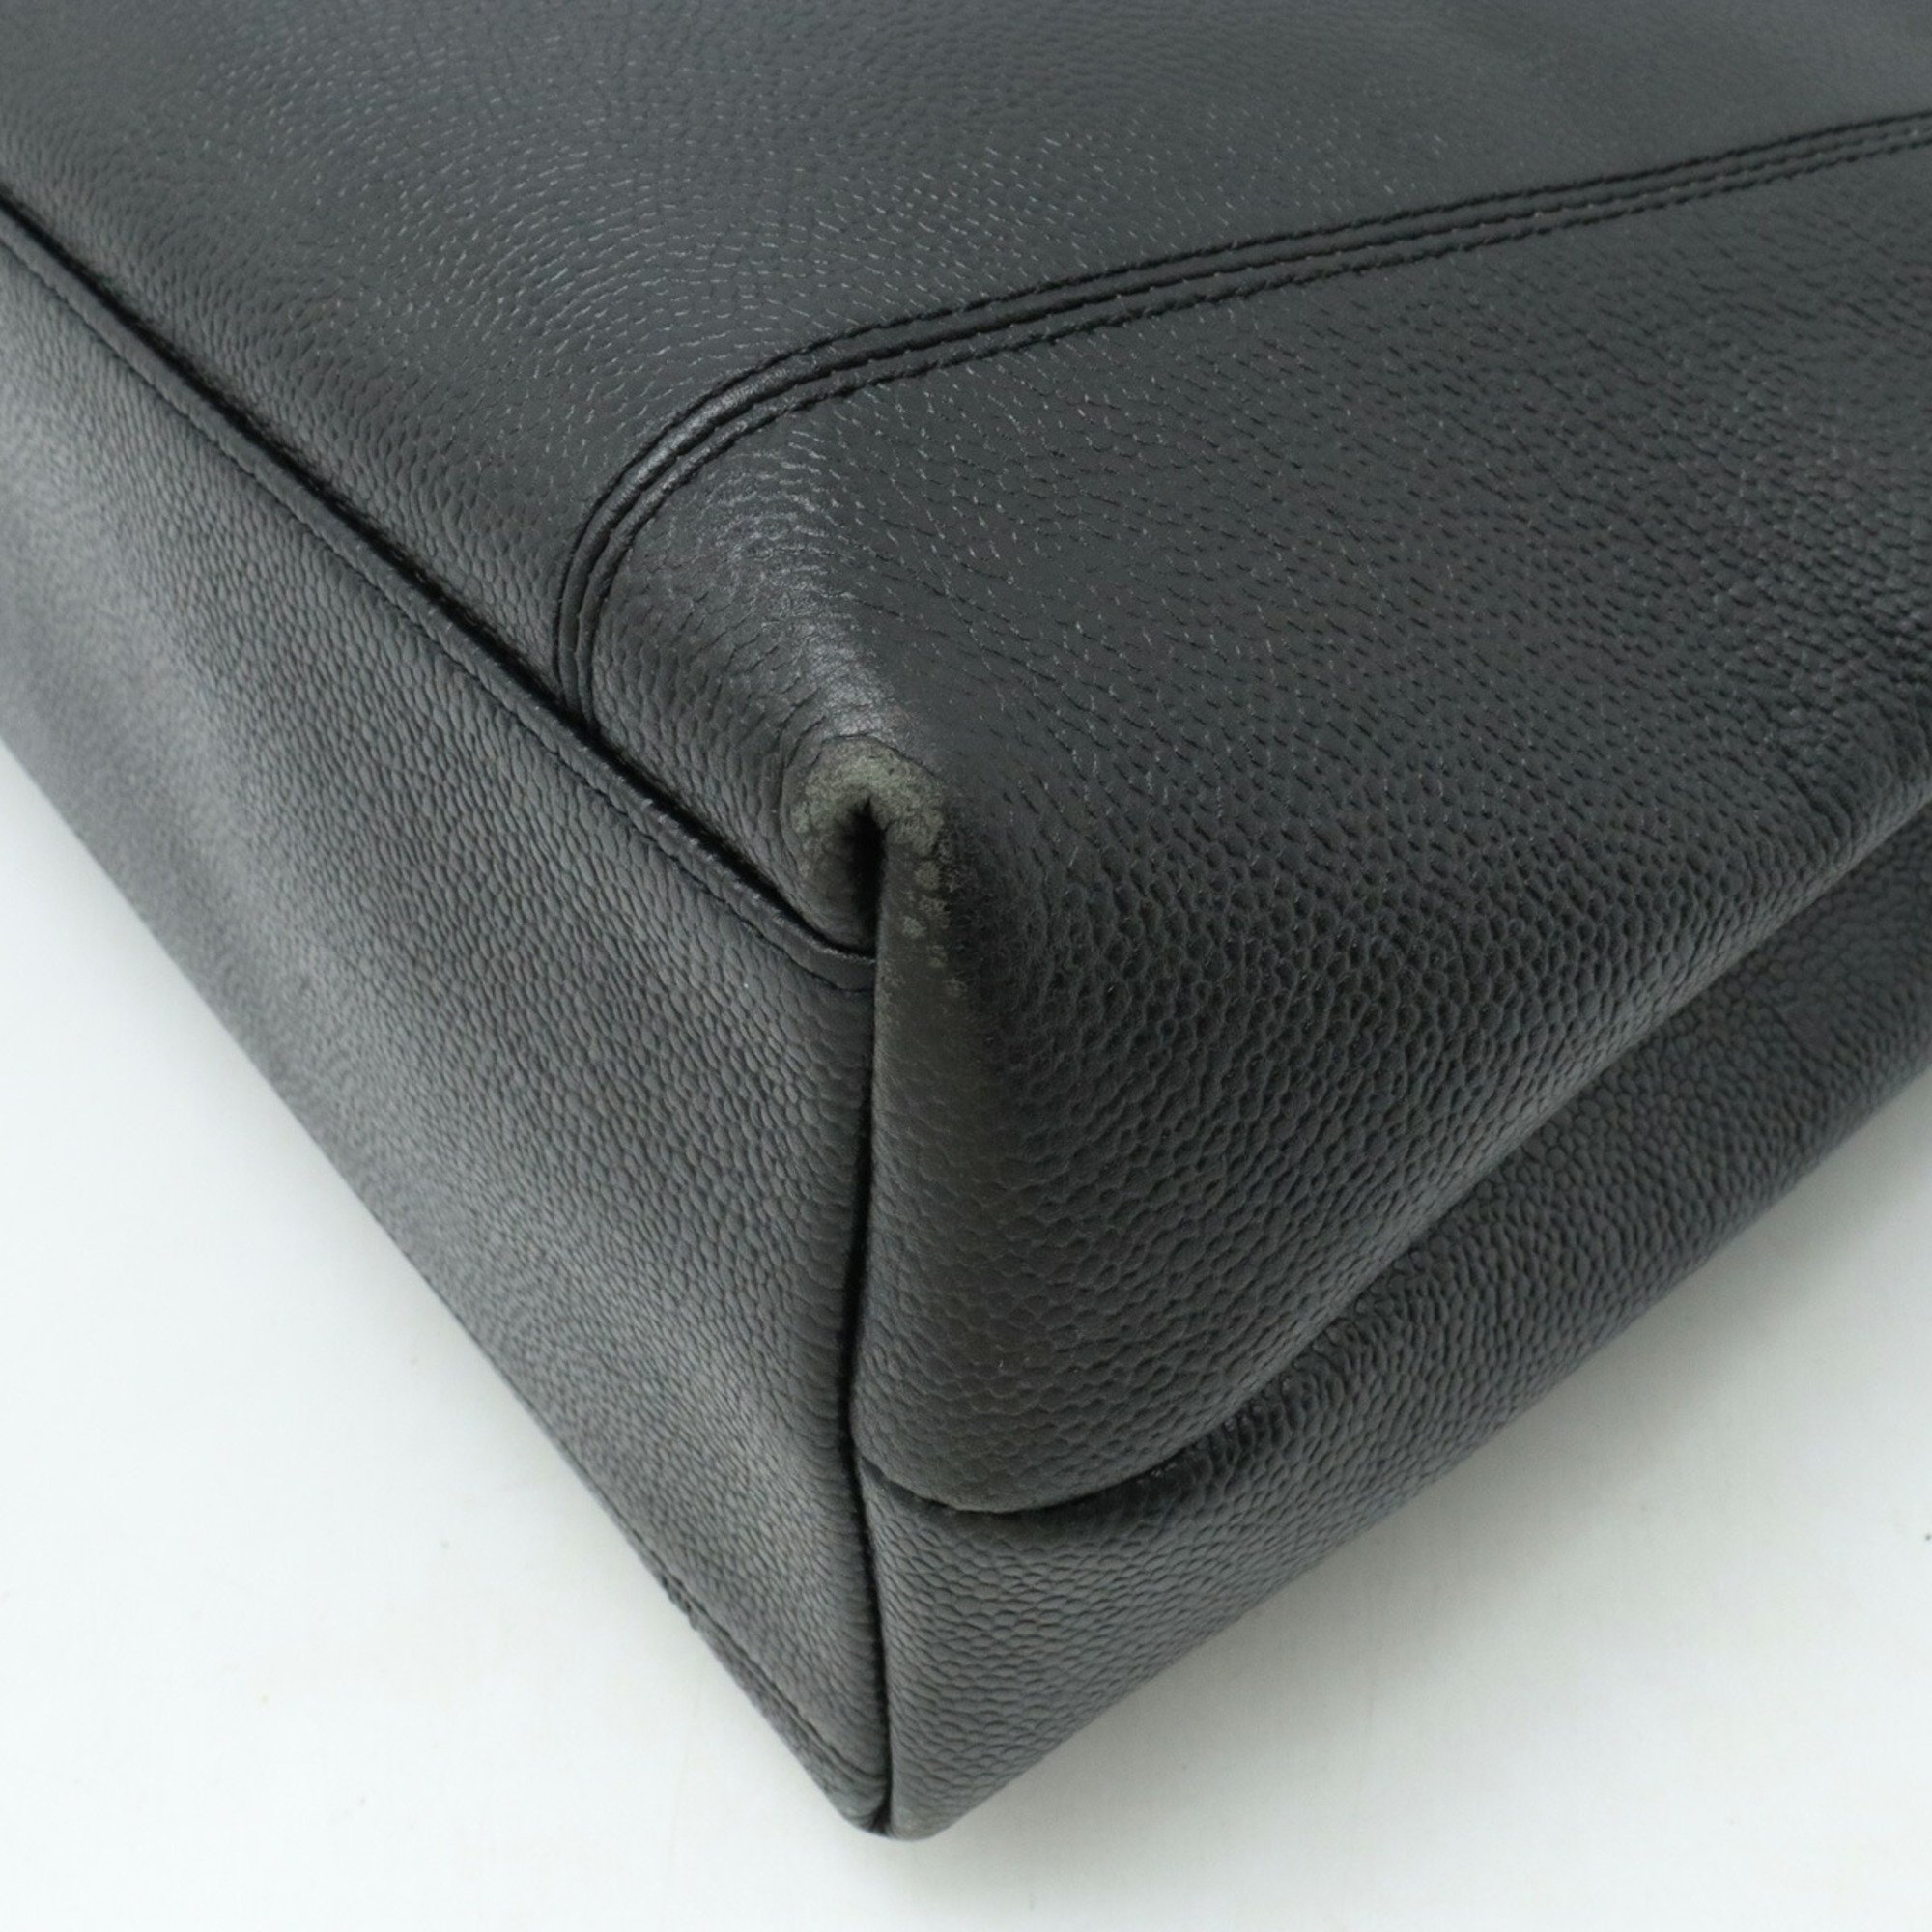 CHANEL Chanel tote bag shoulder caviar skin leather black